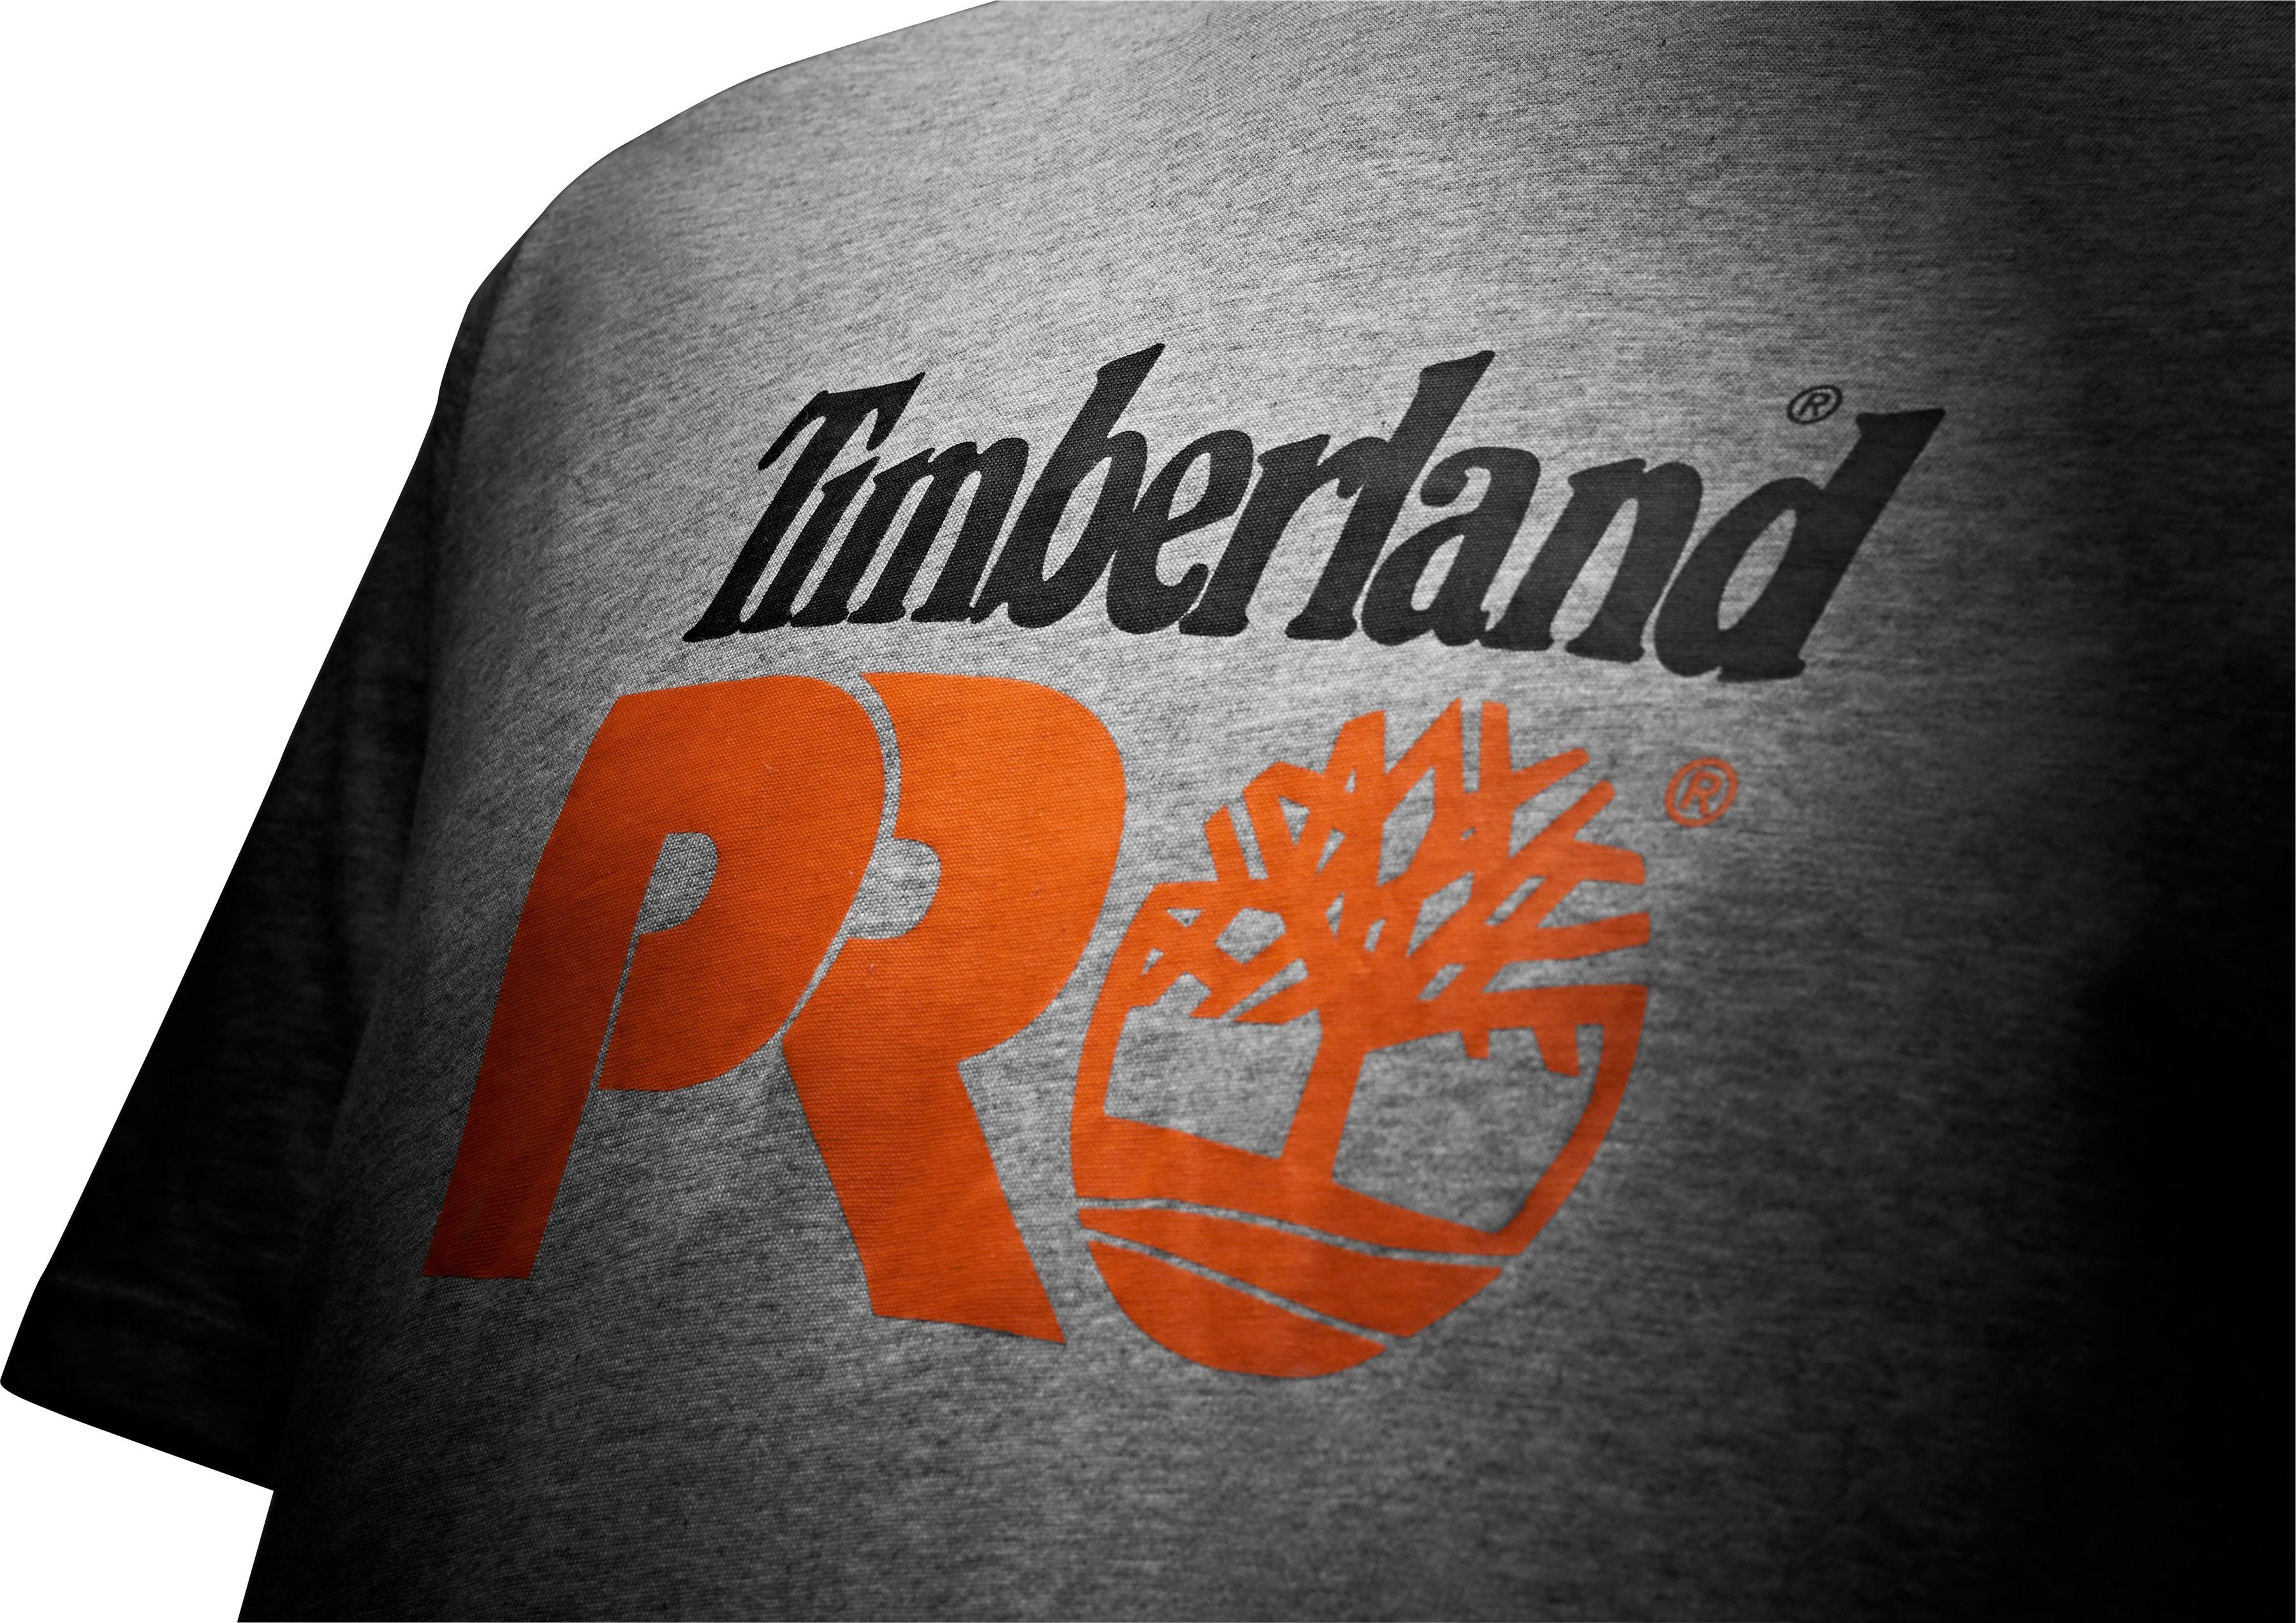 Timberland Pro T-Shirt Core 100% Bio-Baumwolle